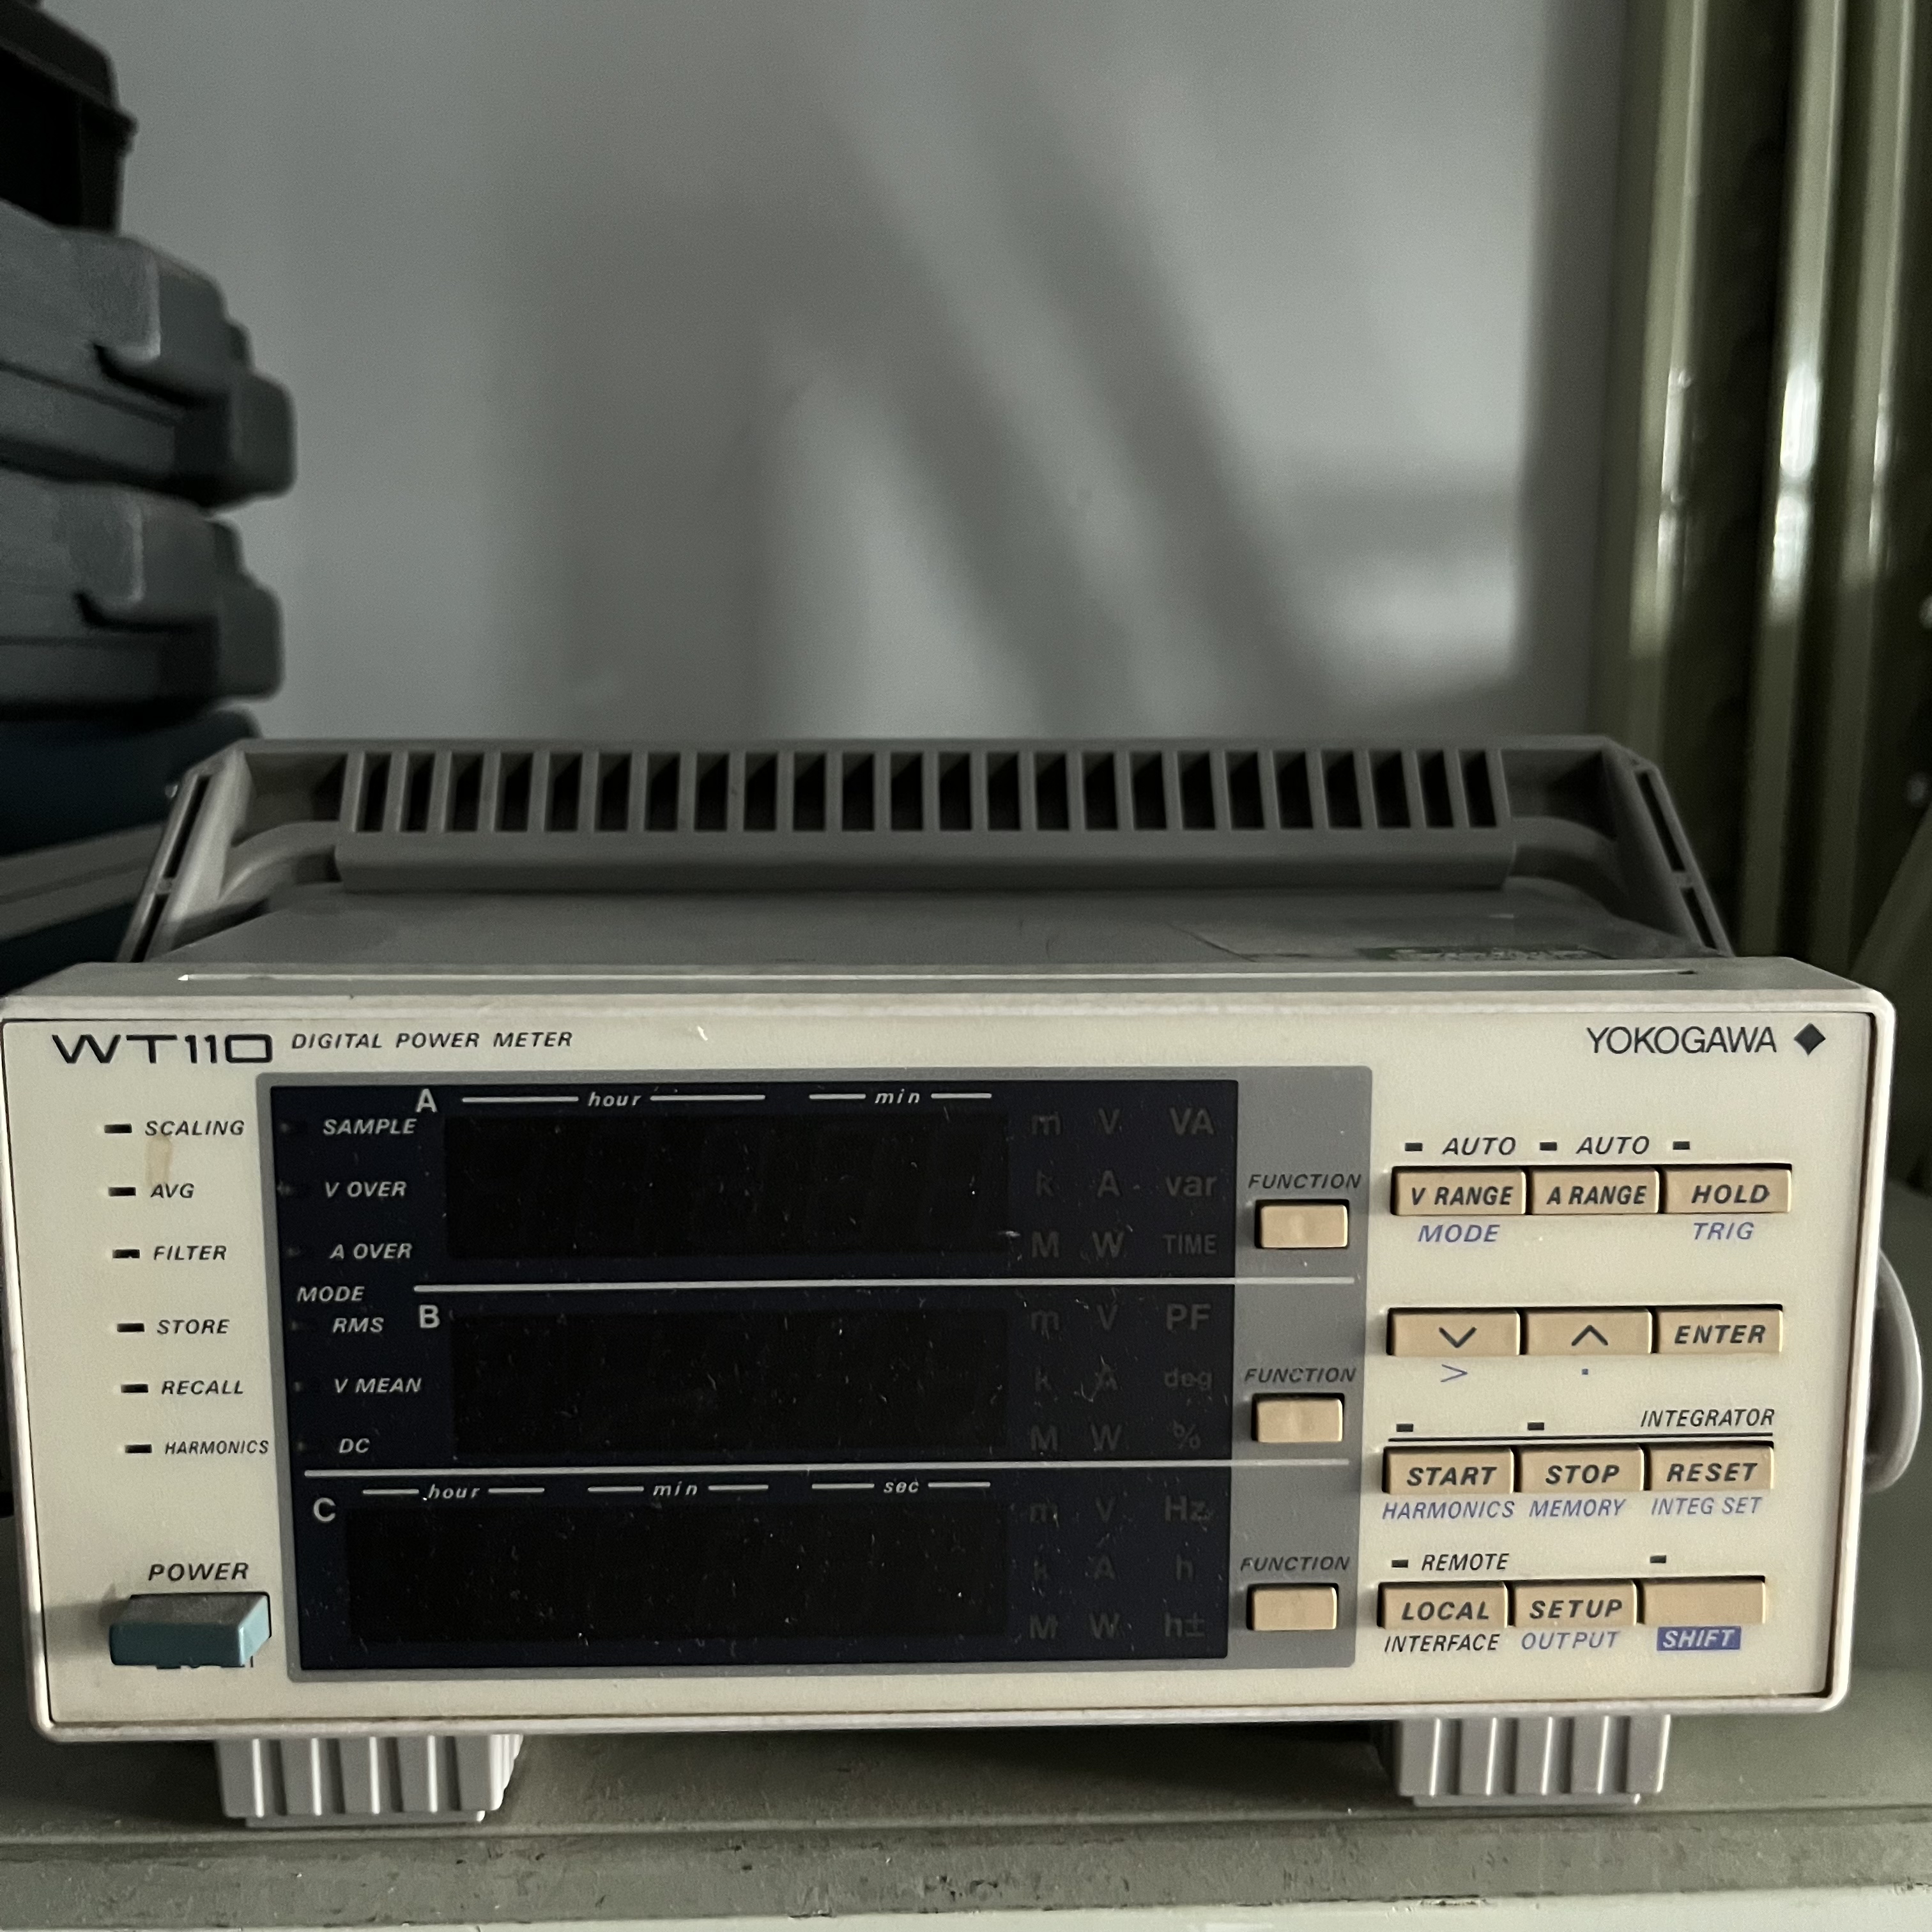 okogawa横河WT210数字功率计10 MHz 至110 GHz多功能功率测量仪表